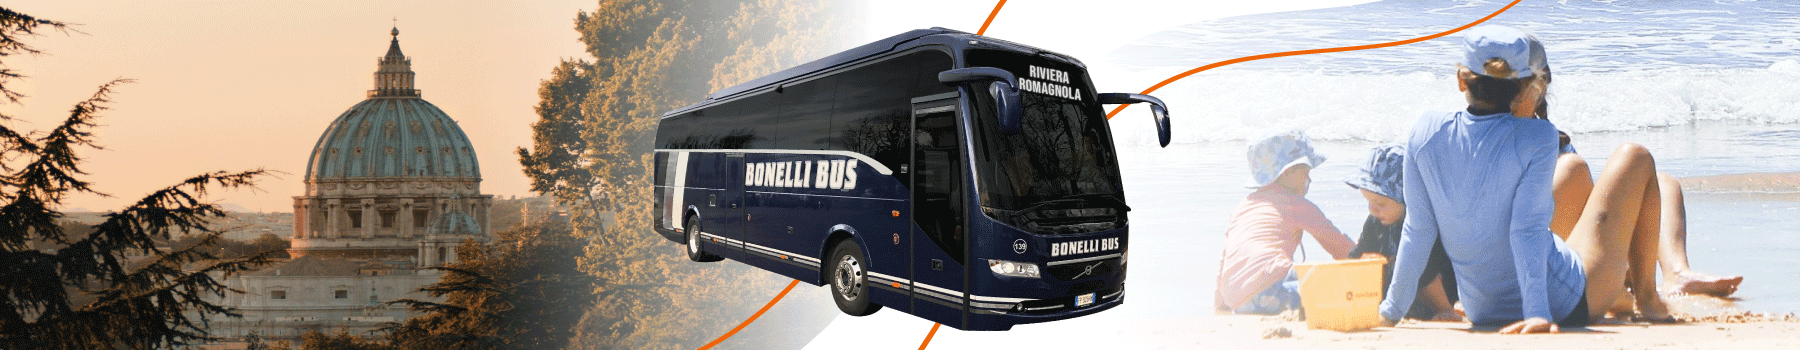 De Rome à Rimini en bus - Bonelli Bus